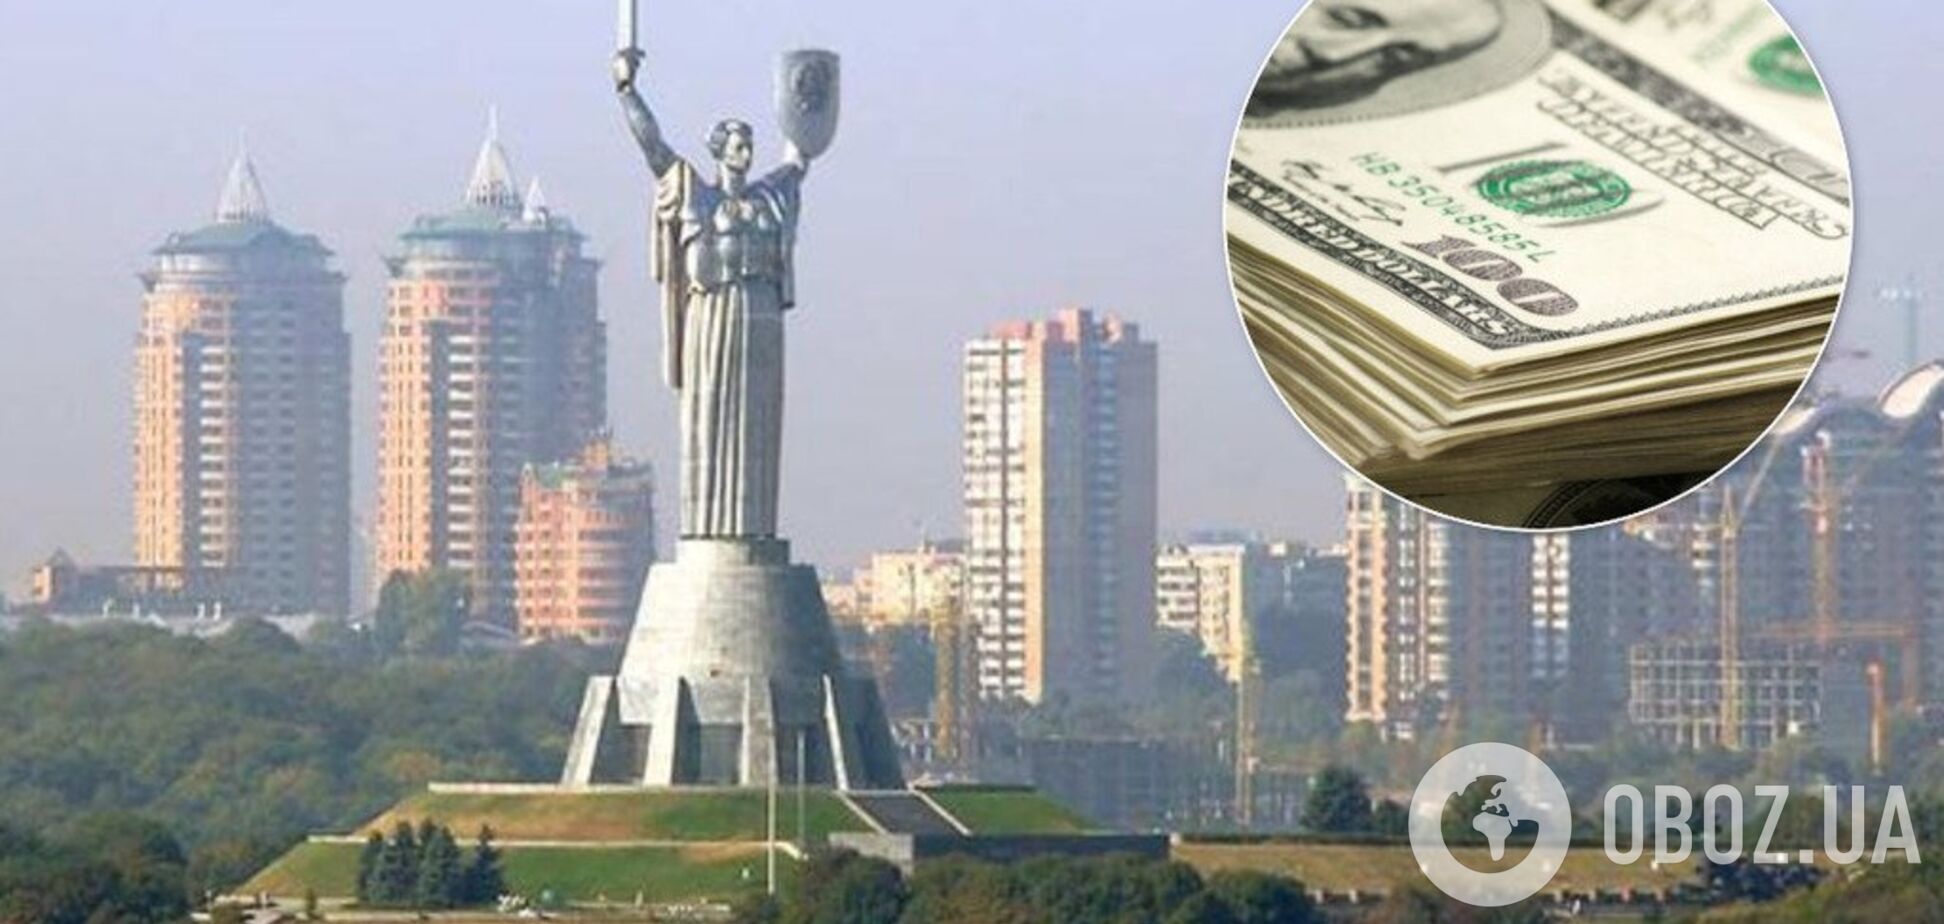 'Житло для мільйонерів': скільки коштують квартири у хмарочосах Києва